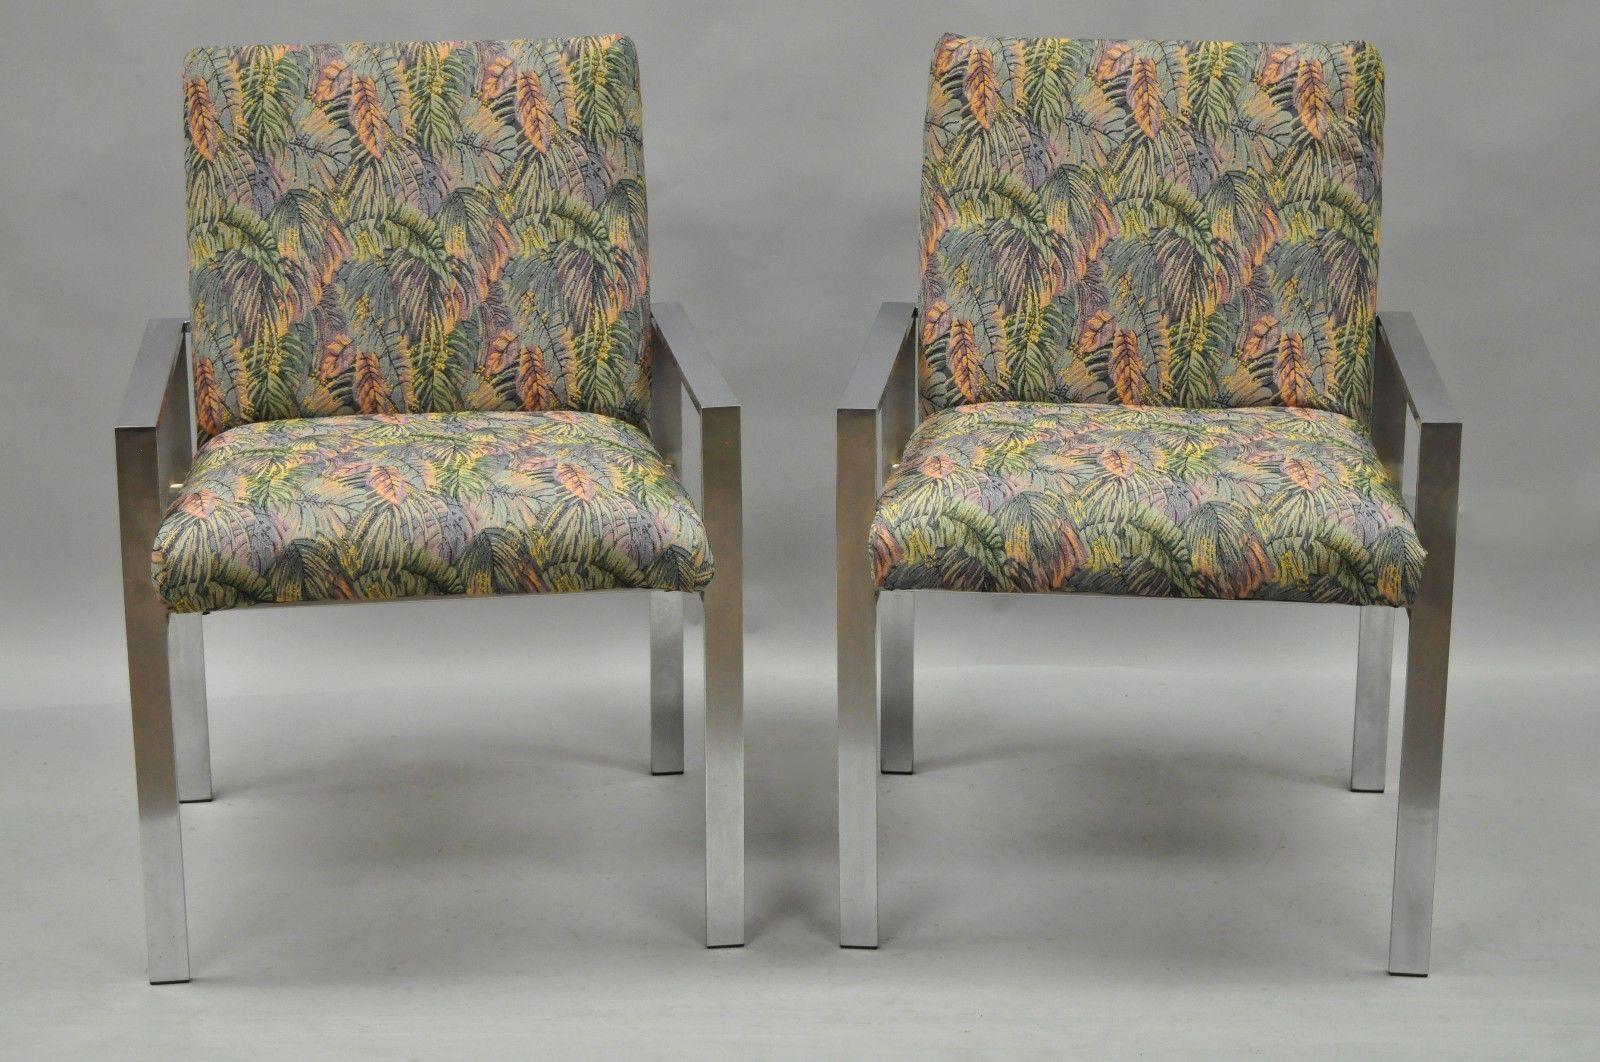 Paire de fauteuils modernistes vintage en aluminium brossé de style Mid-Century Modern attribués à Harvey Probber. Cet article se caractérise par des lignes modernistes épurées, des cadres métalliques en aluminium brossé et une forme épurée. Il ne